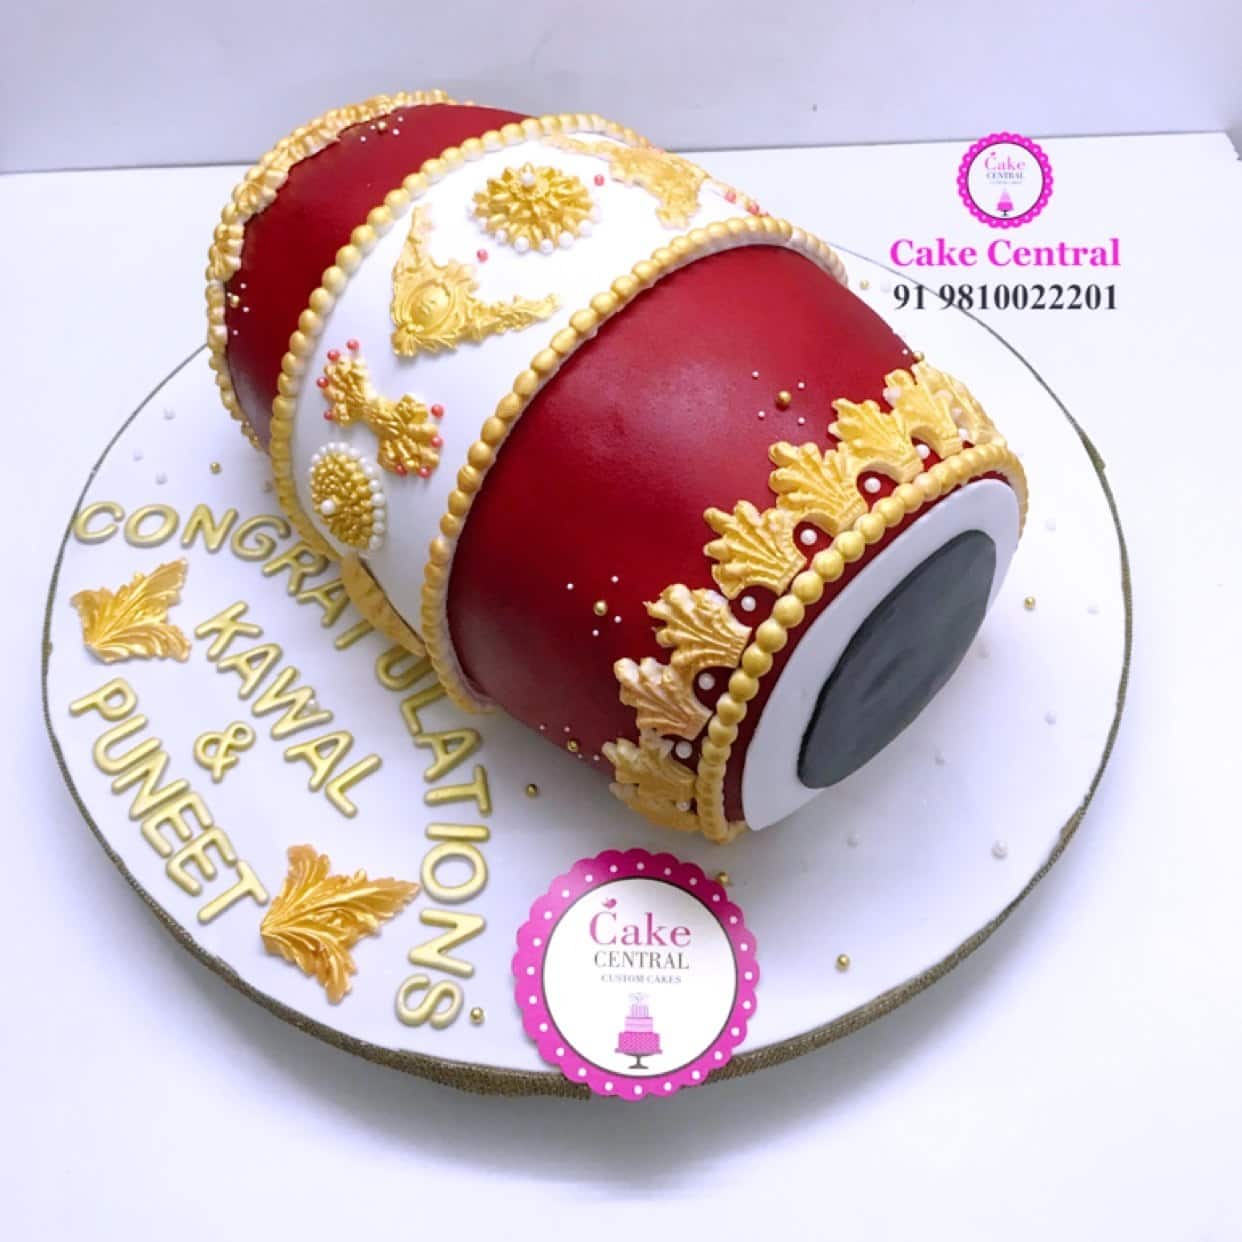 Cake Central - Premier Cake Design Studio, Defence Colony, New Delhi |  Zomato